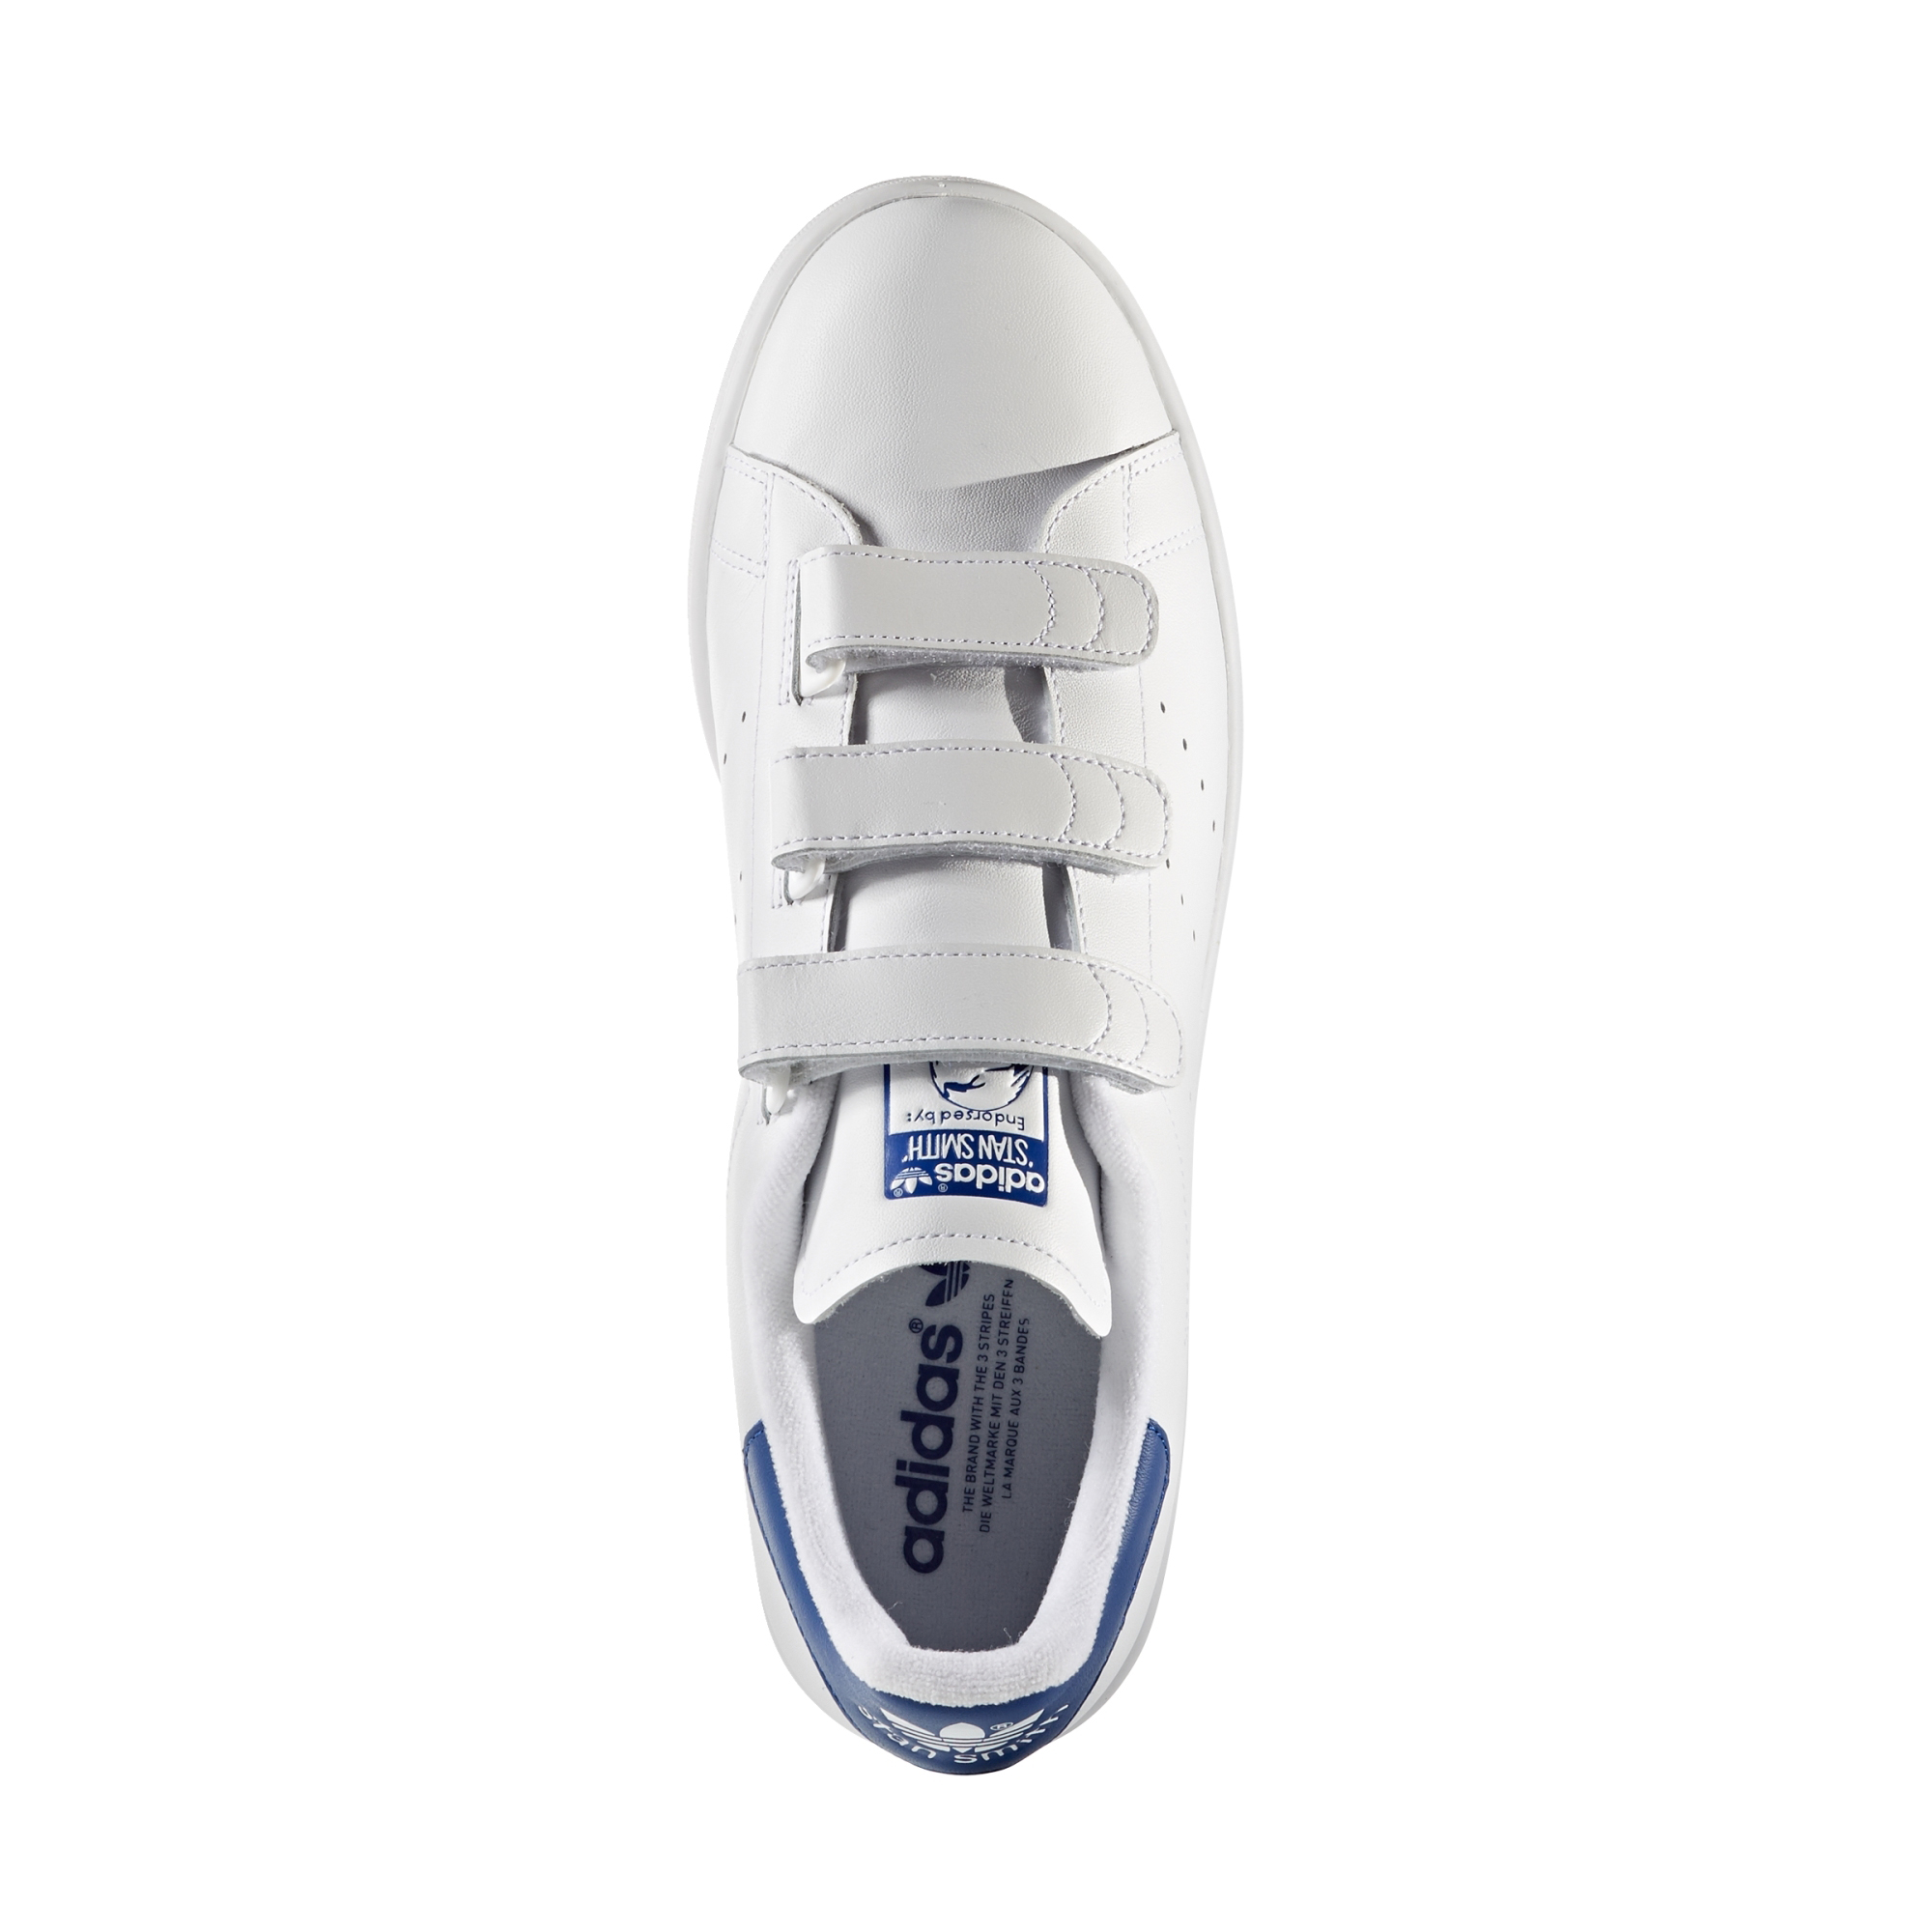 Adidas Originasl Stan Smith CF (white/white/collegiate royal)